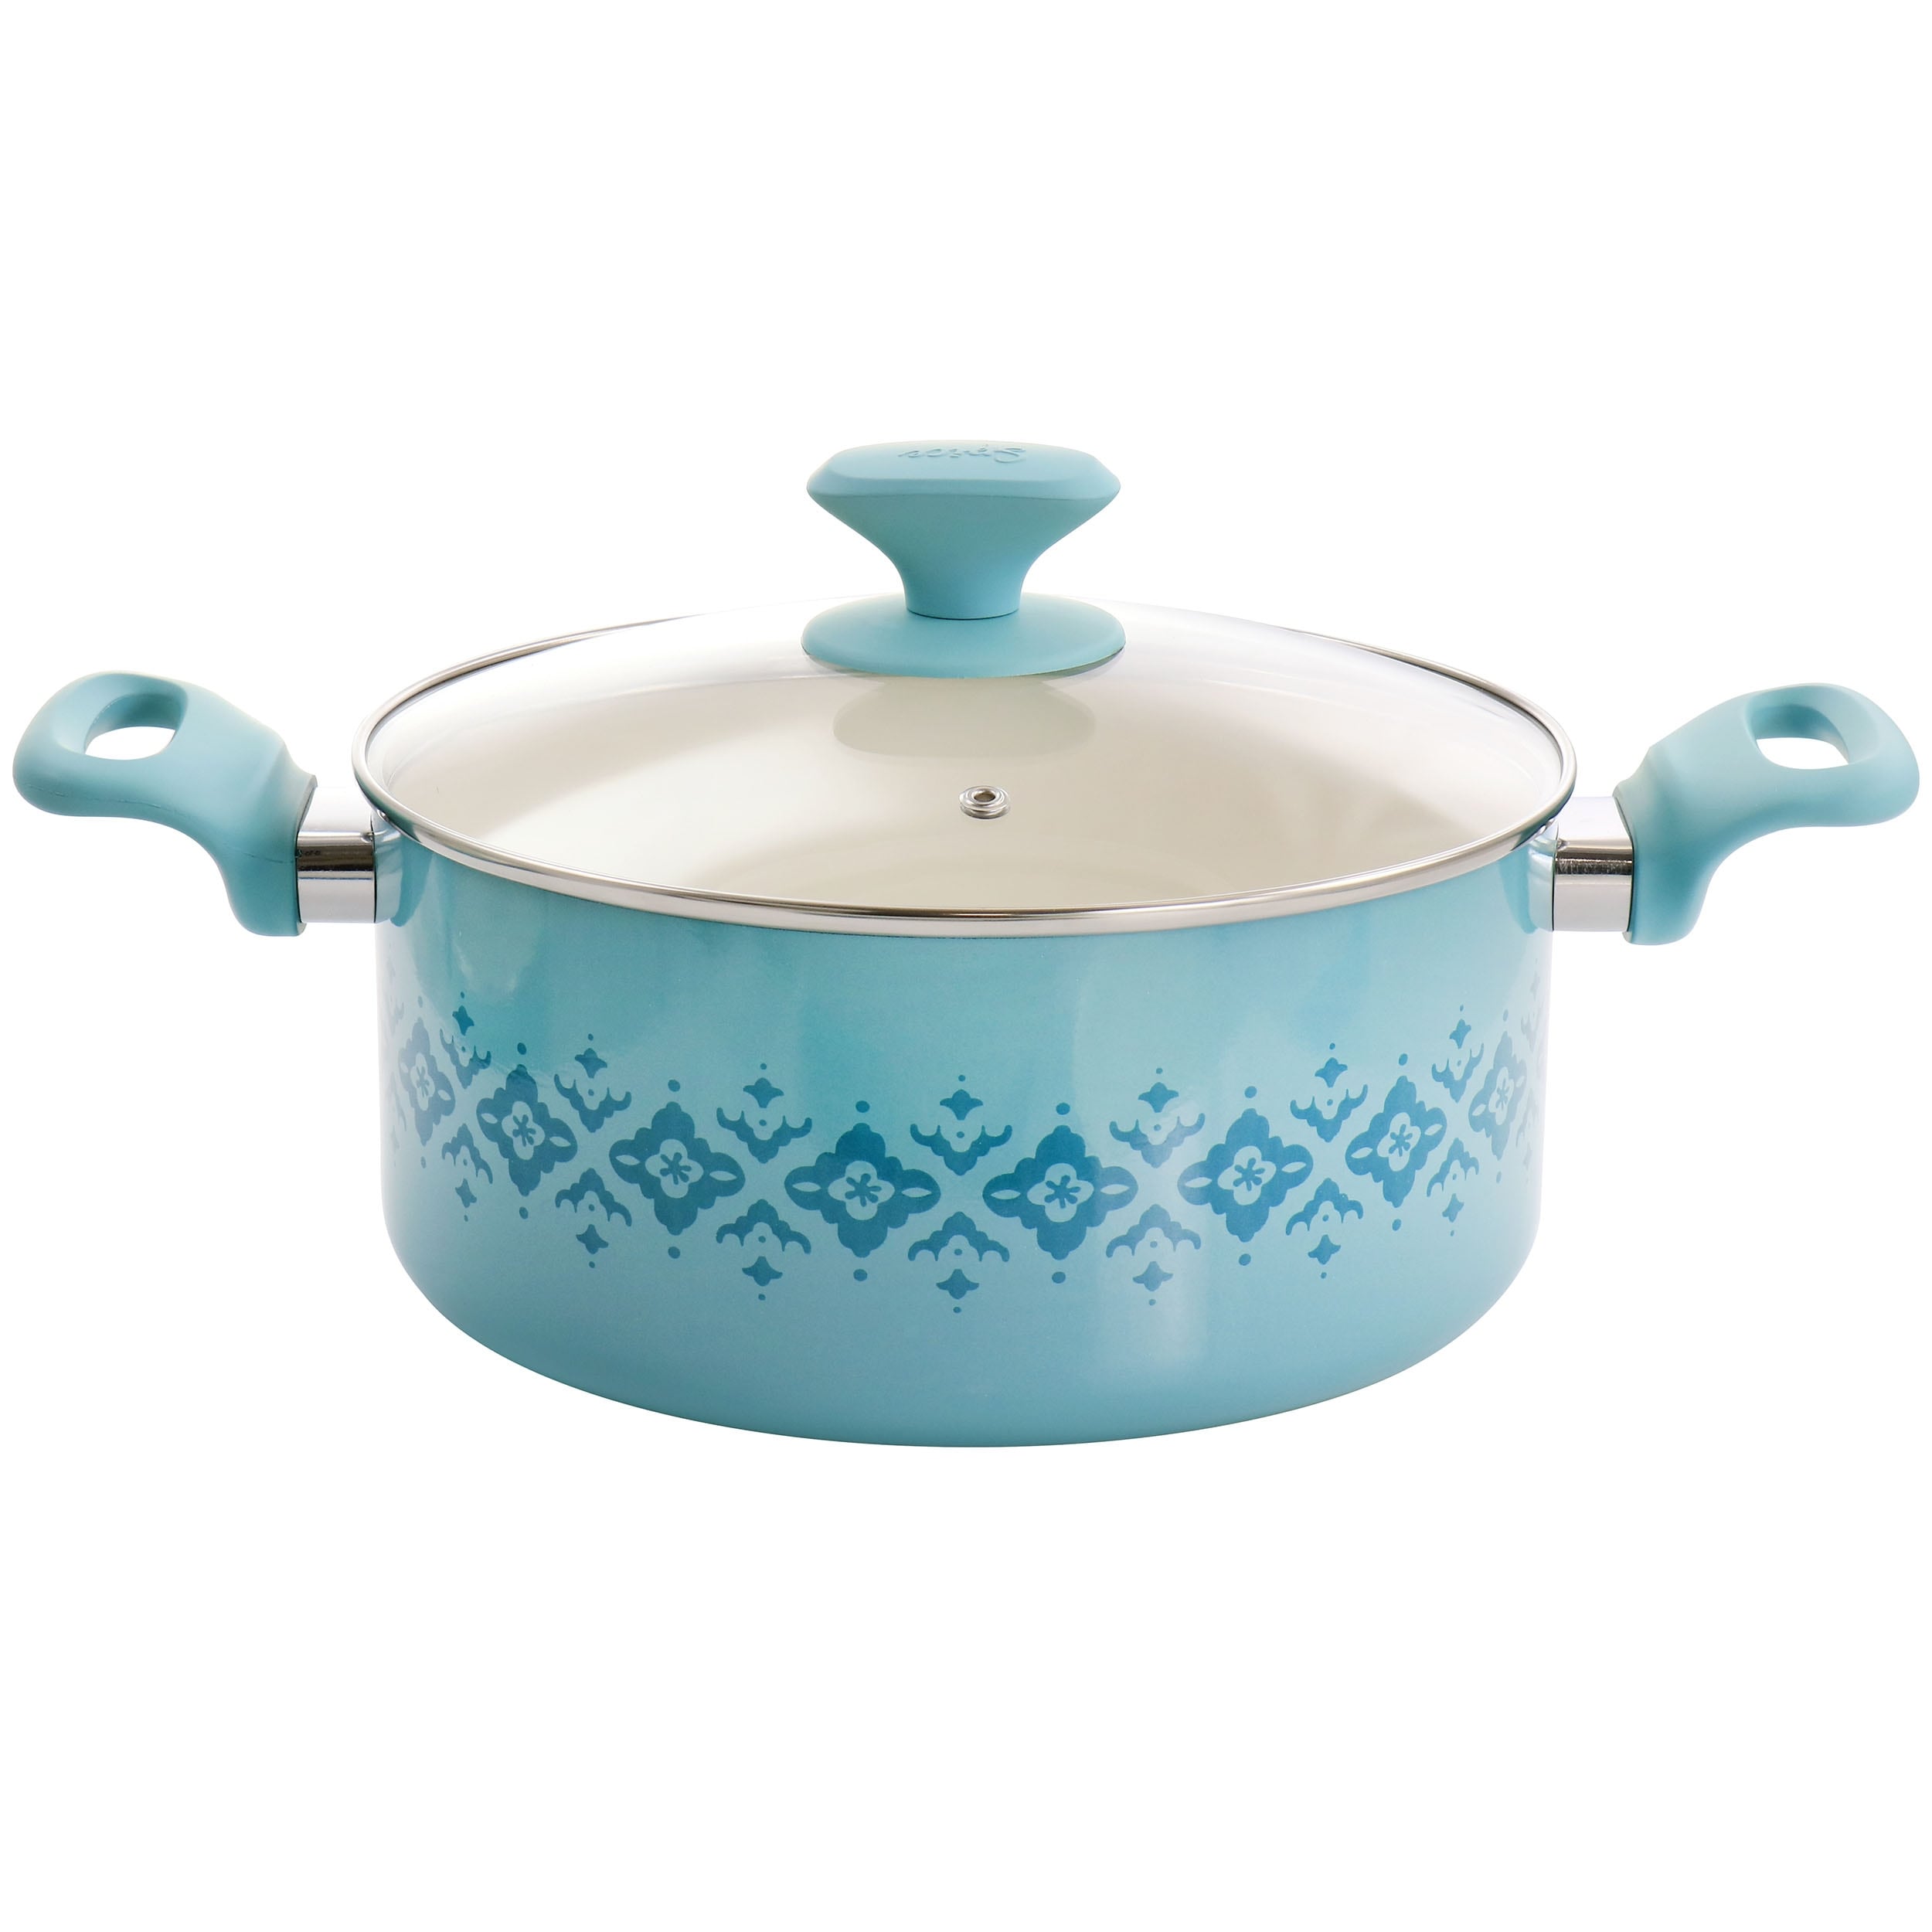 Spice by Tia Mowry Savory Saffron 16-Piece Healthy Nonstick Ceramic  Cookware Set - Aqua Blue